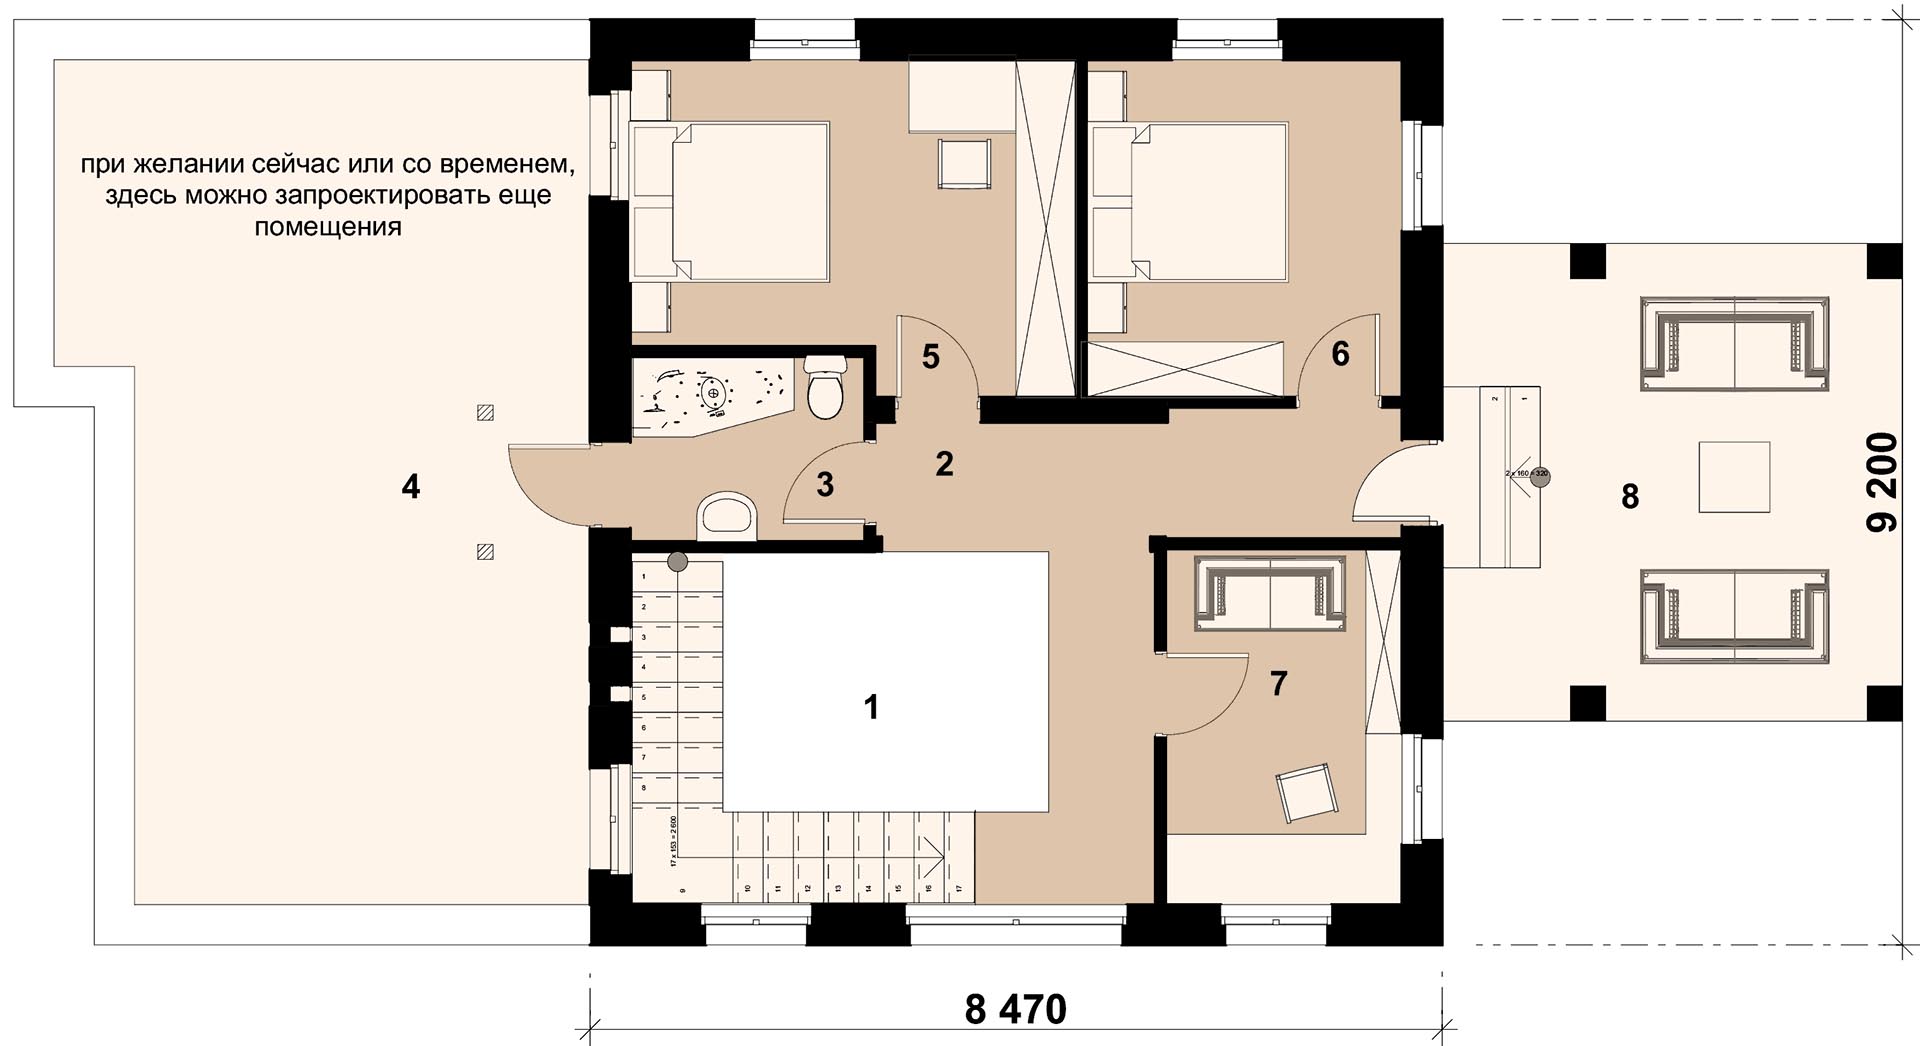 ШАМПАНЬ 131 - план 2-го этажа двухэтажного дома с лоджией - готовый проект от Инваполис